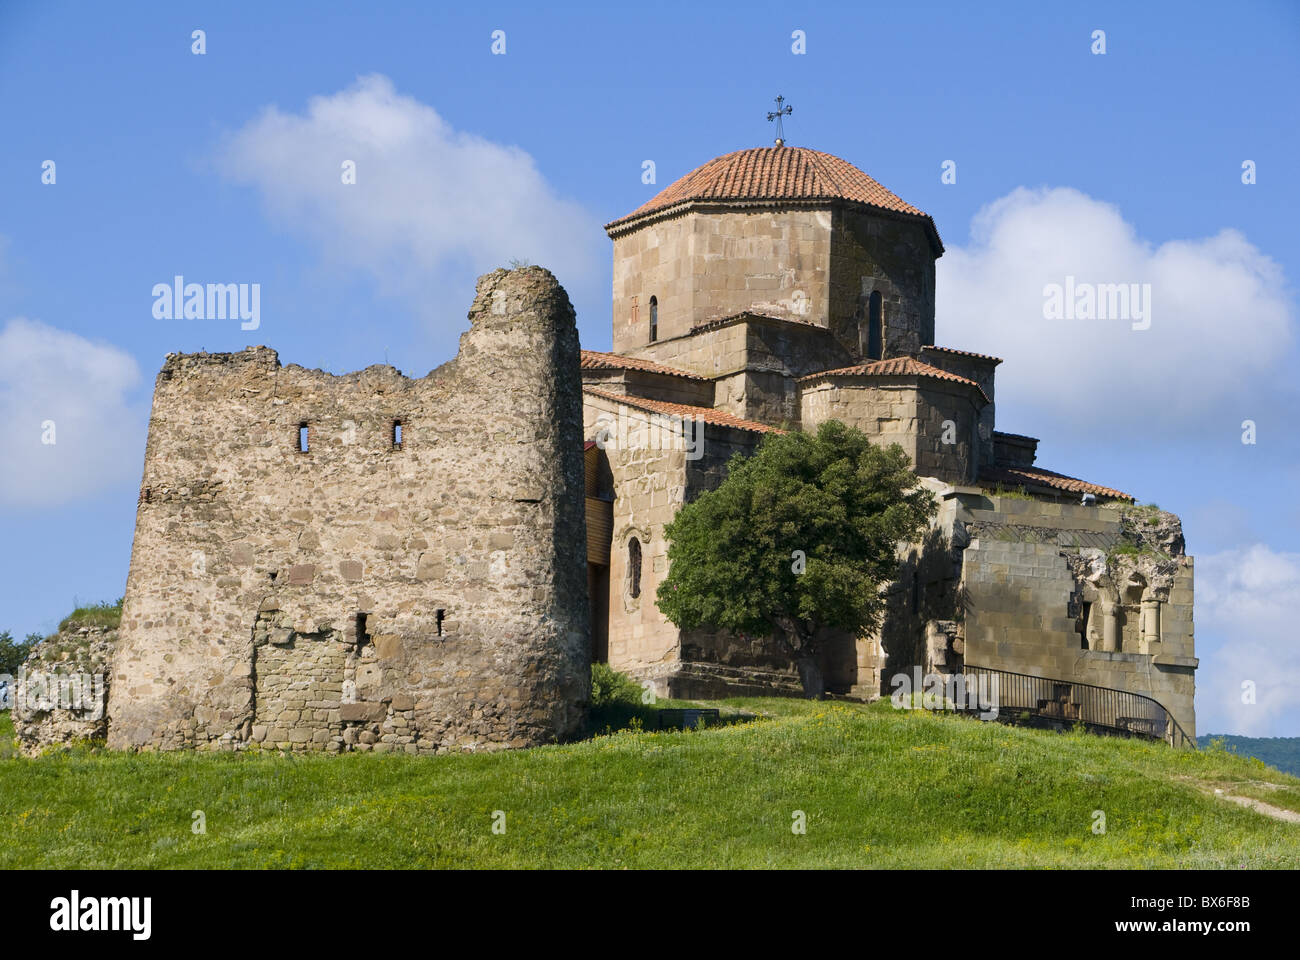 La iglesia de Jvari, Mtskheta, Sitio del Patrimonio Mundial de la UNESCO, Georgia, el Cáucaso, Asia Central, Asia Foto de stock